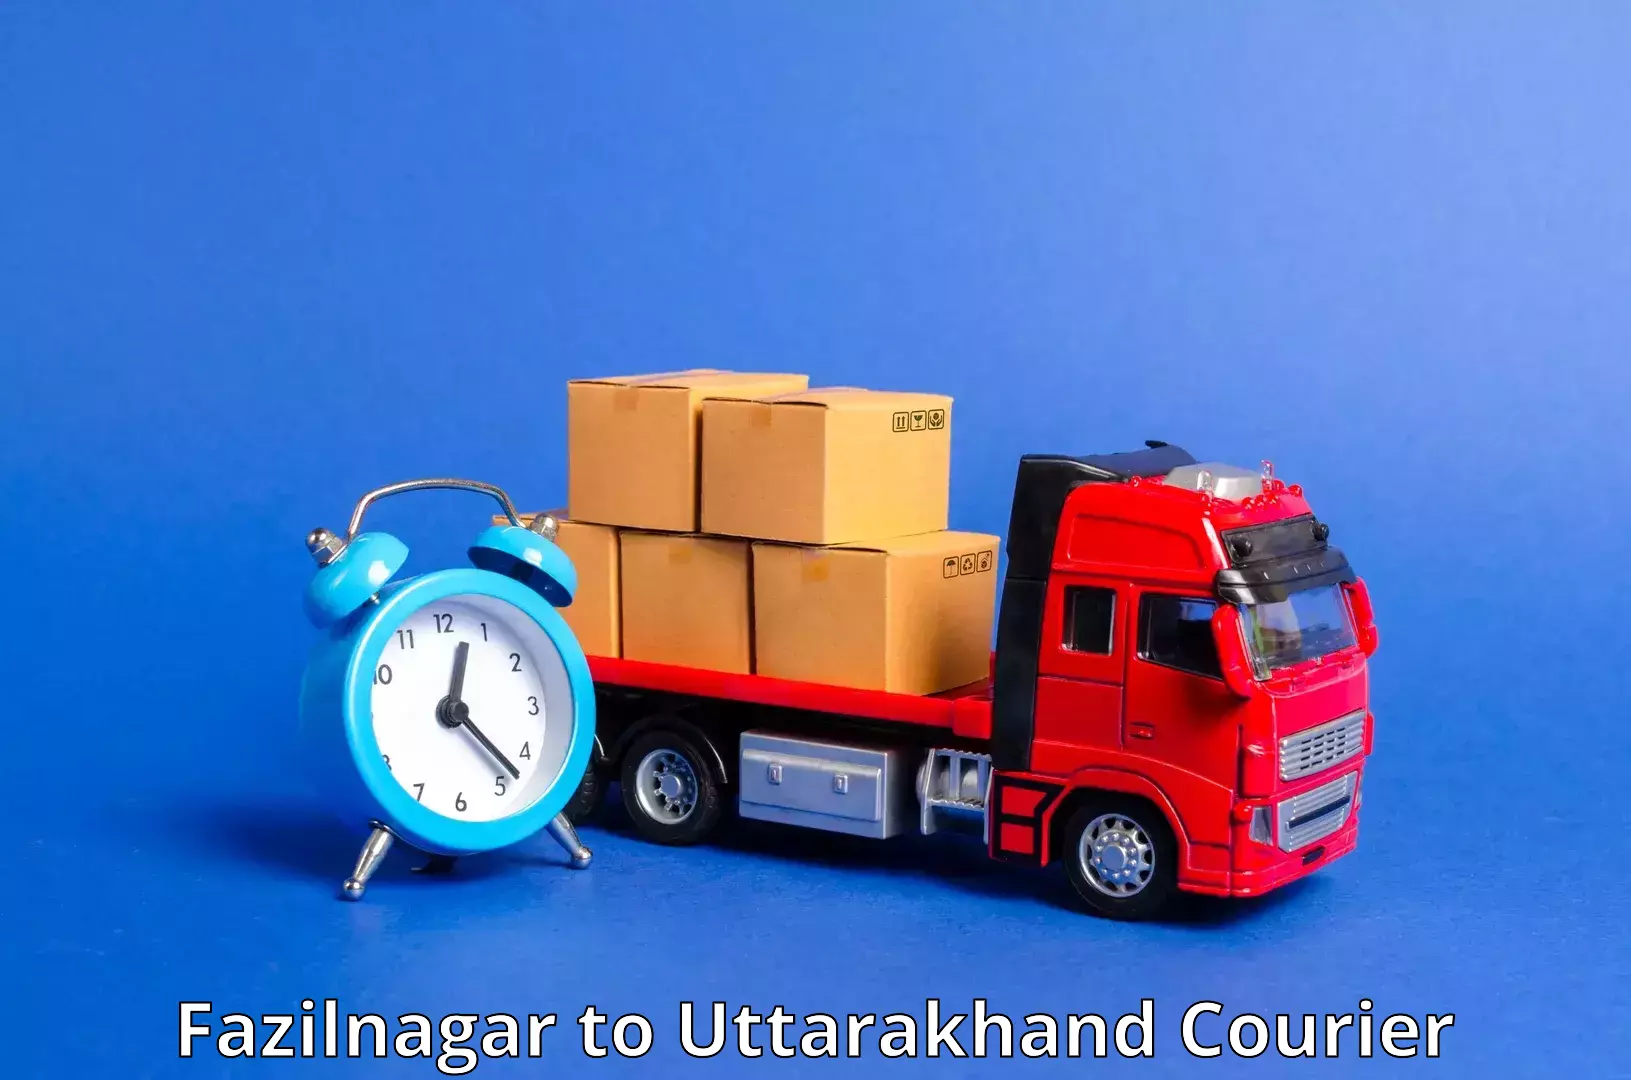 Express mail service Fazilnagar to Uttarakhand